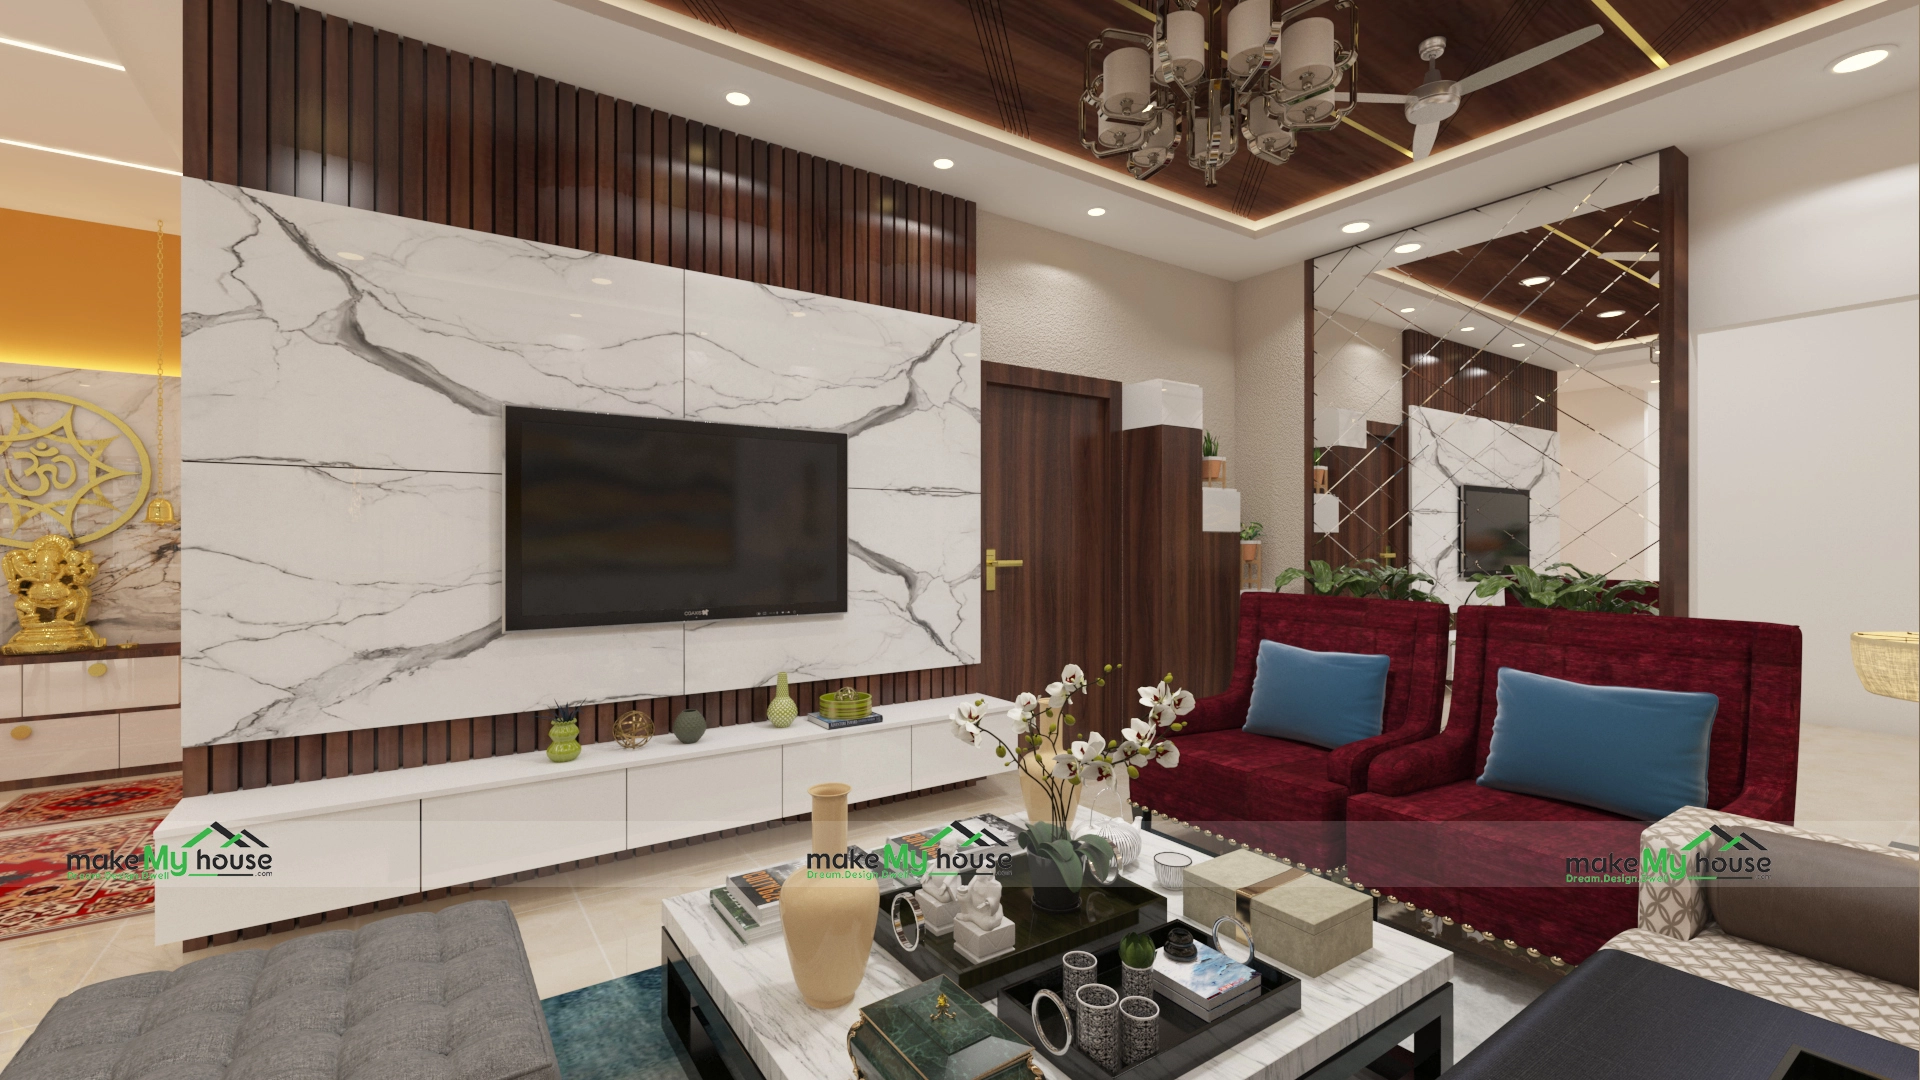 Luxury interior designs